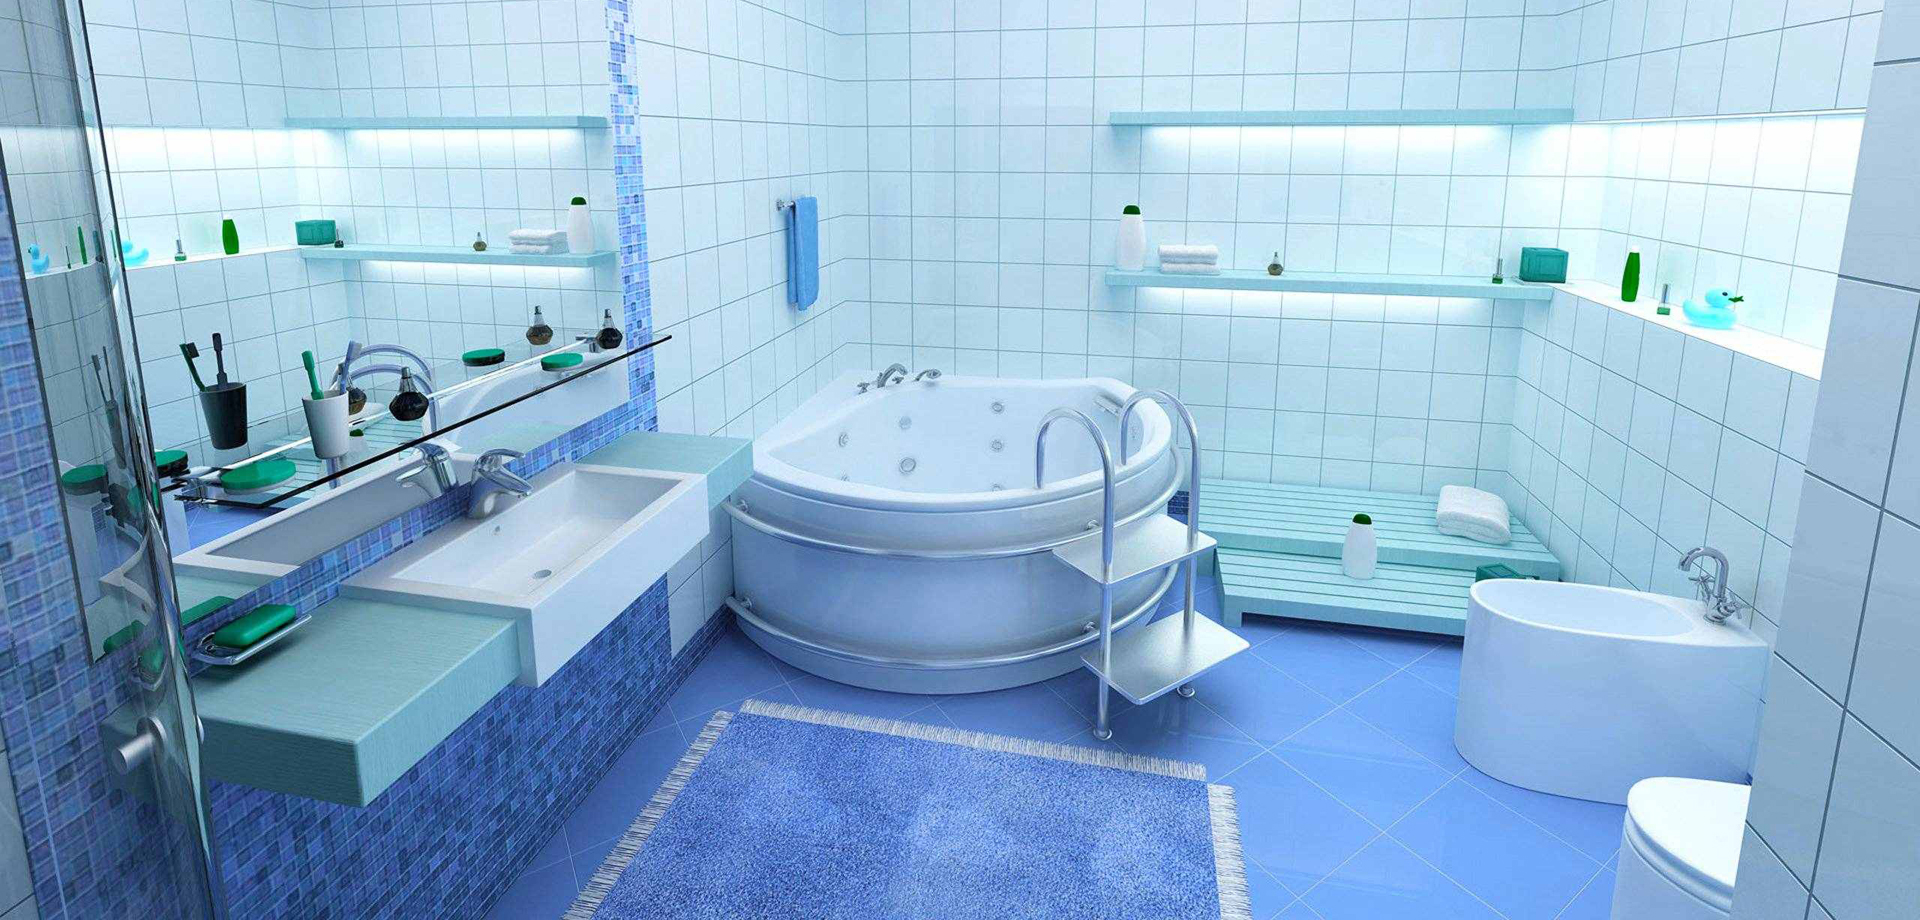 aqua-blue-bathroom-designs-aqua-bathrooms-twickenham-aqua-bathroom-tile